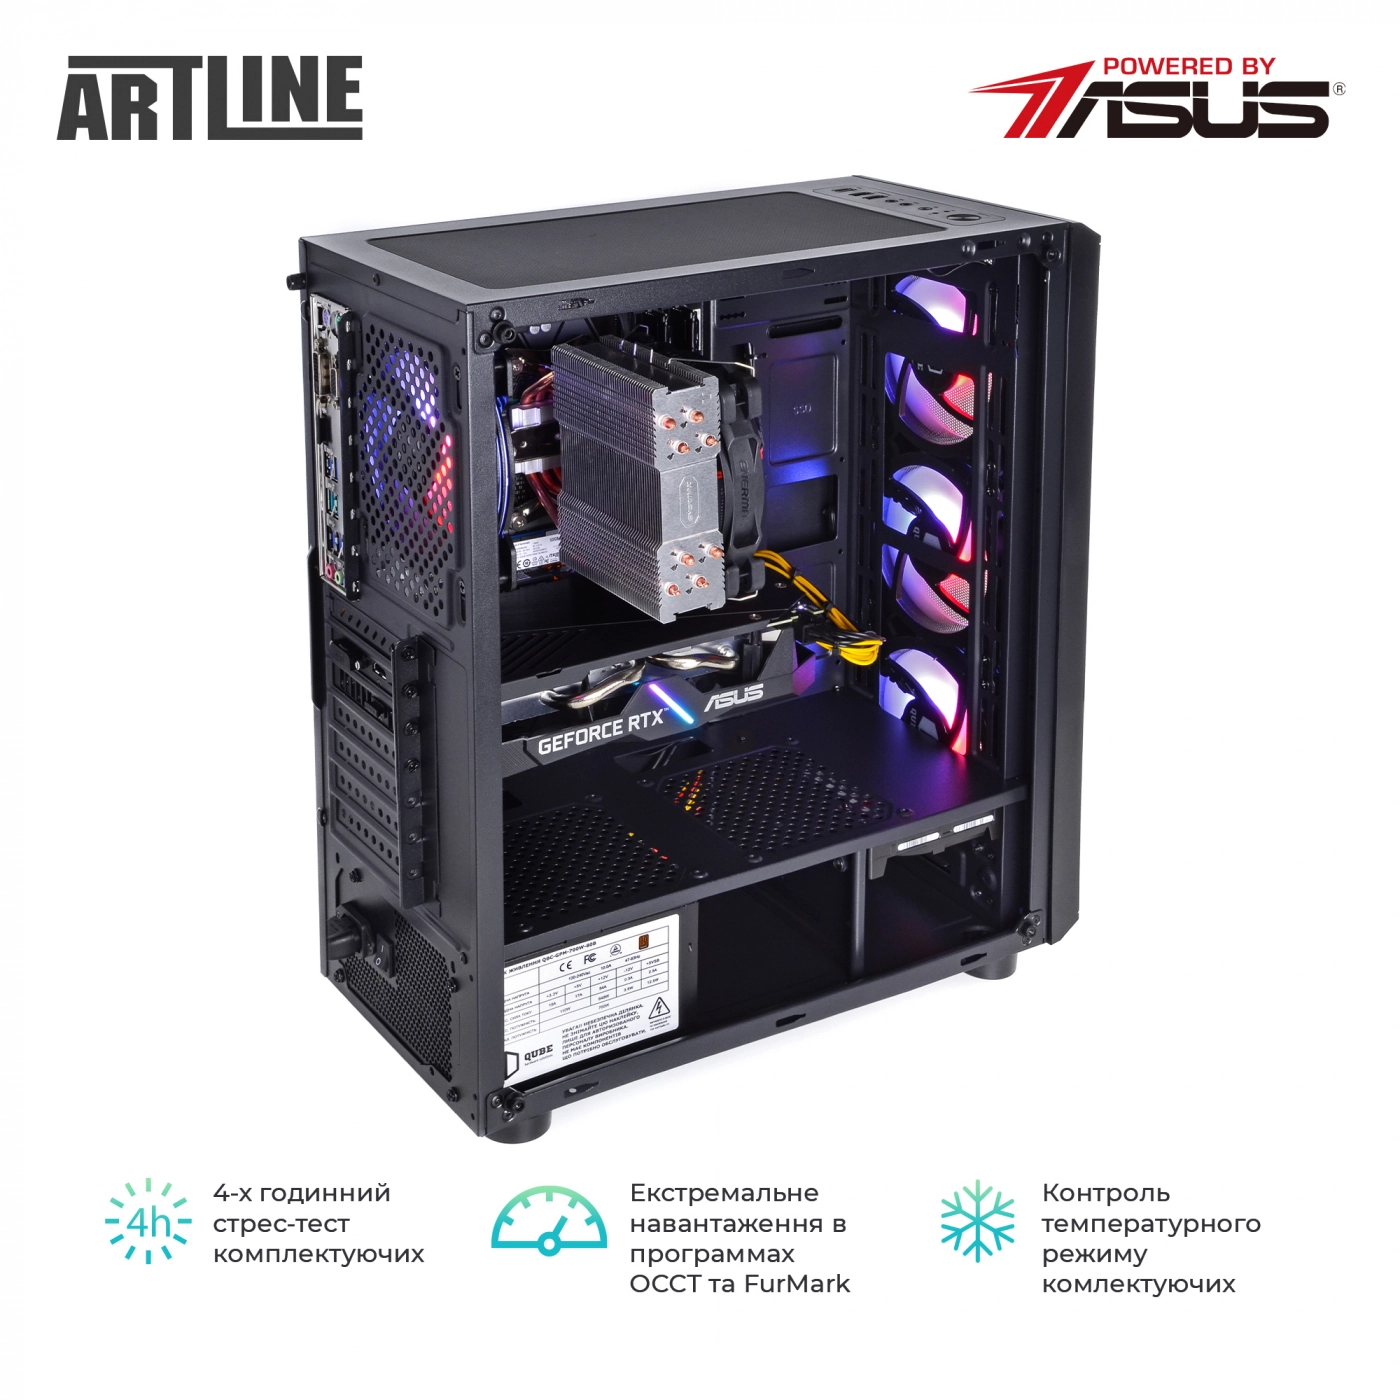 Купить Компьютер ARTLINE Gaming X68v09 - фото 10